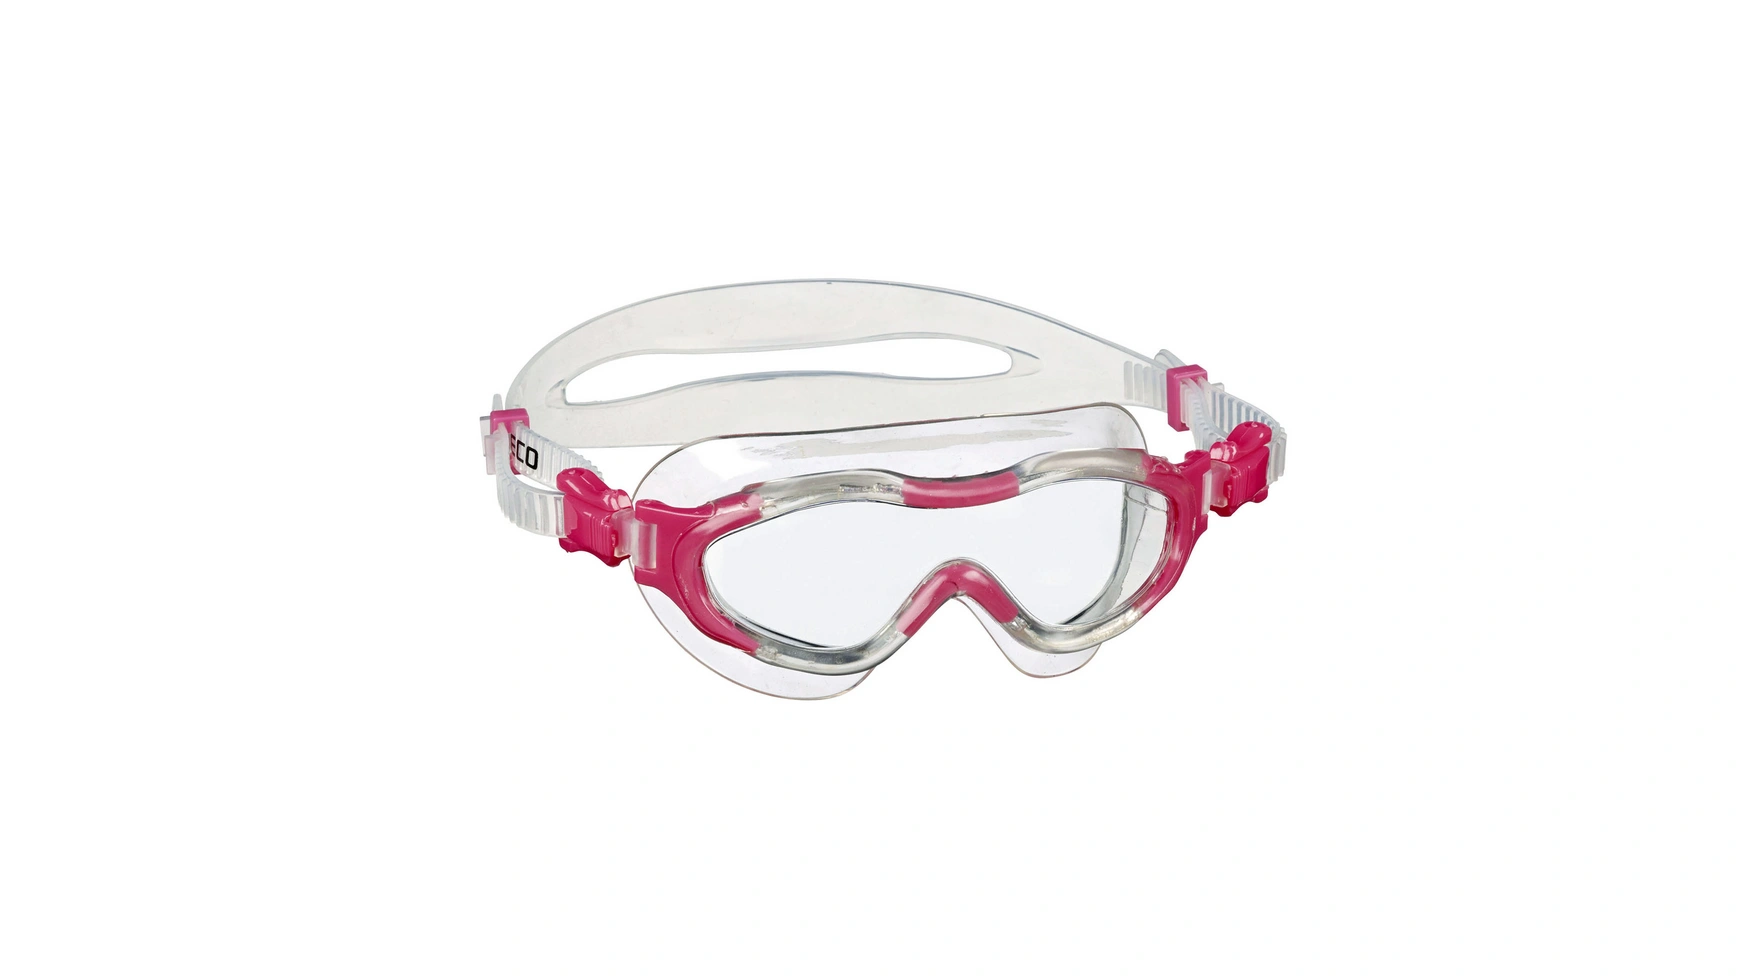 Beco Alicante 4+ Мягкие панорамные очки для детей от 4 лет и старше профессиональные очки для плавания ming незапотевающие спортивные очки для взрослых водные водонепроницаемые очки для плавания